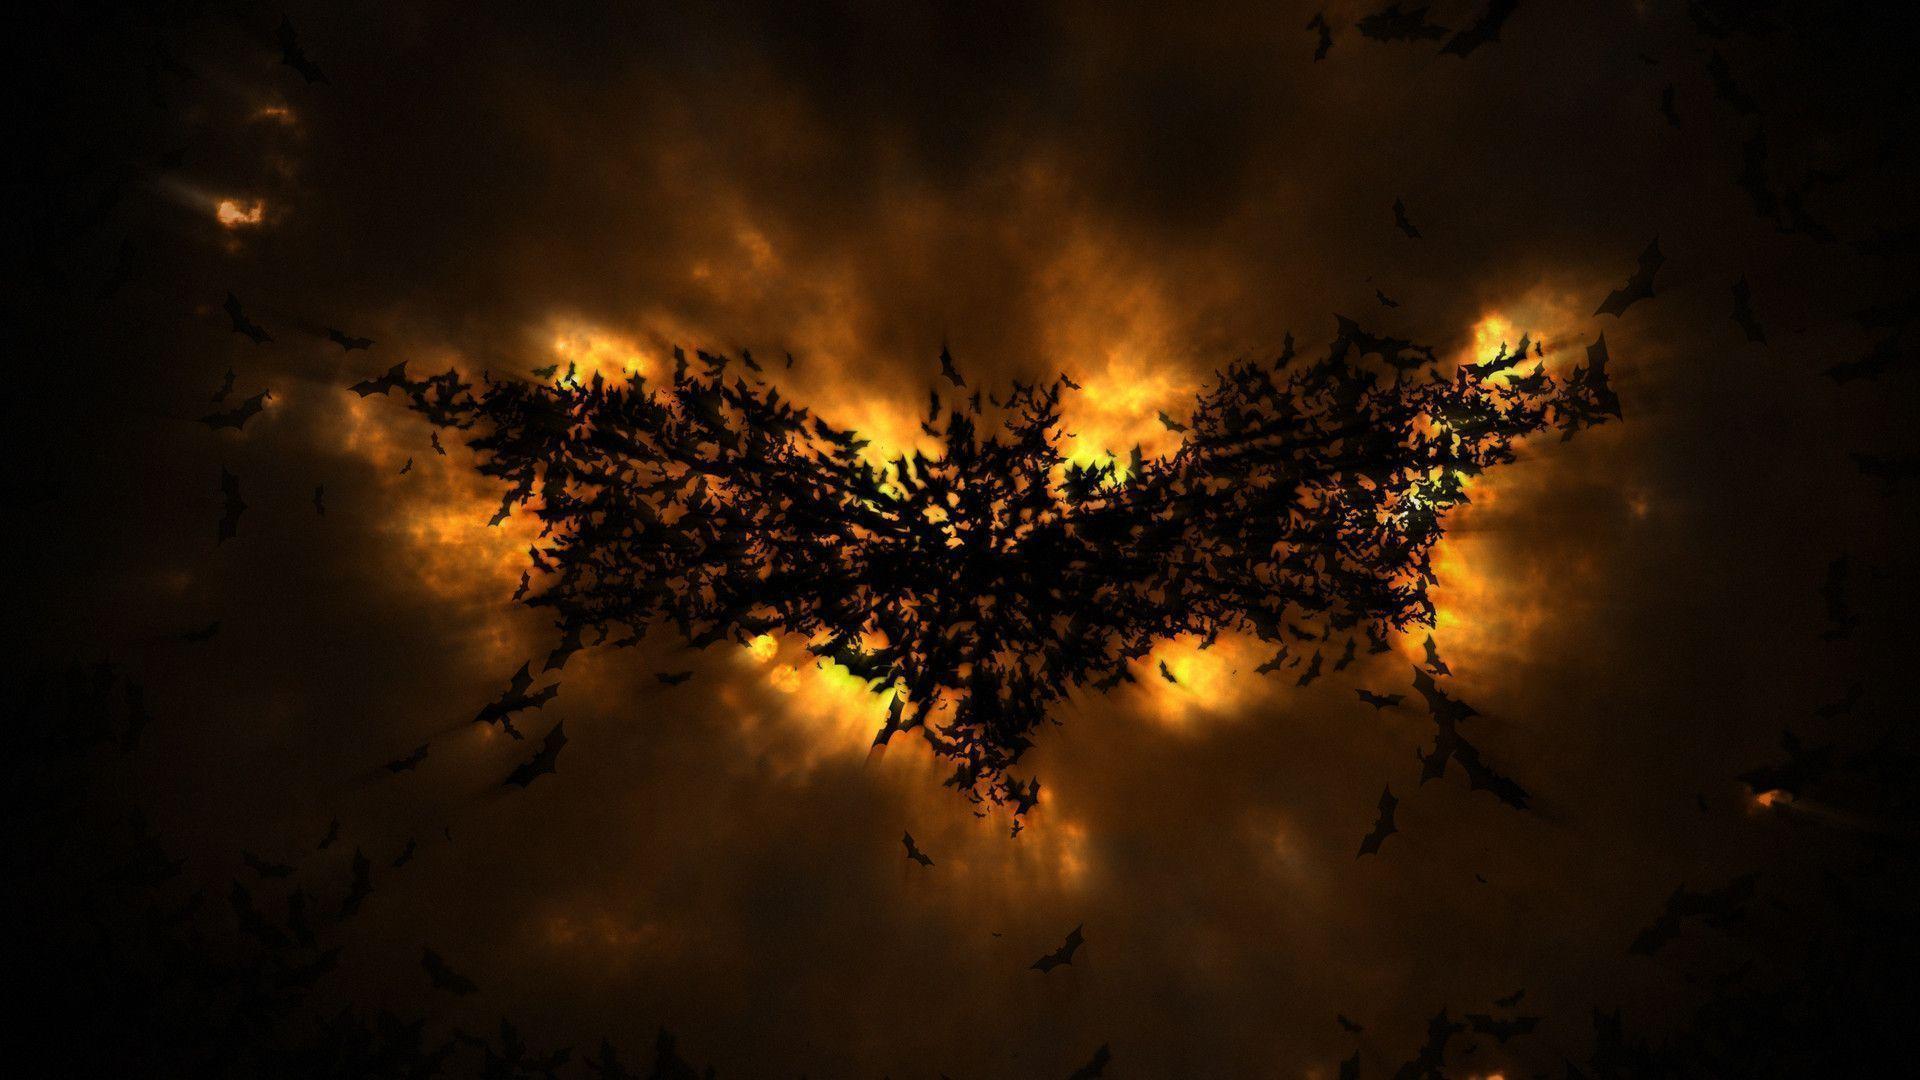 The Dark Knight Rises Wallpapers HD 1920x1080 1920x1080